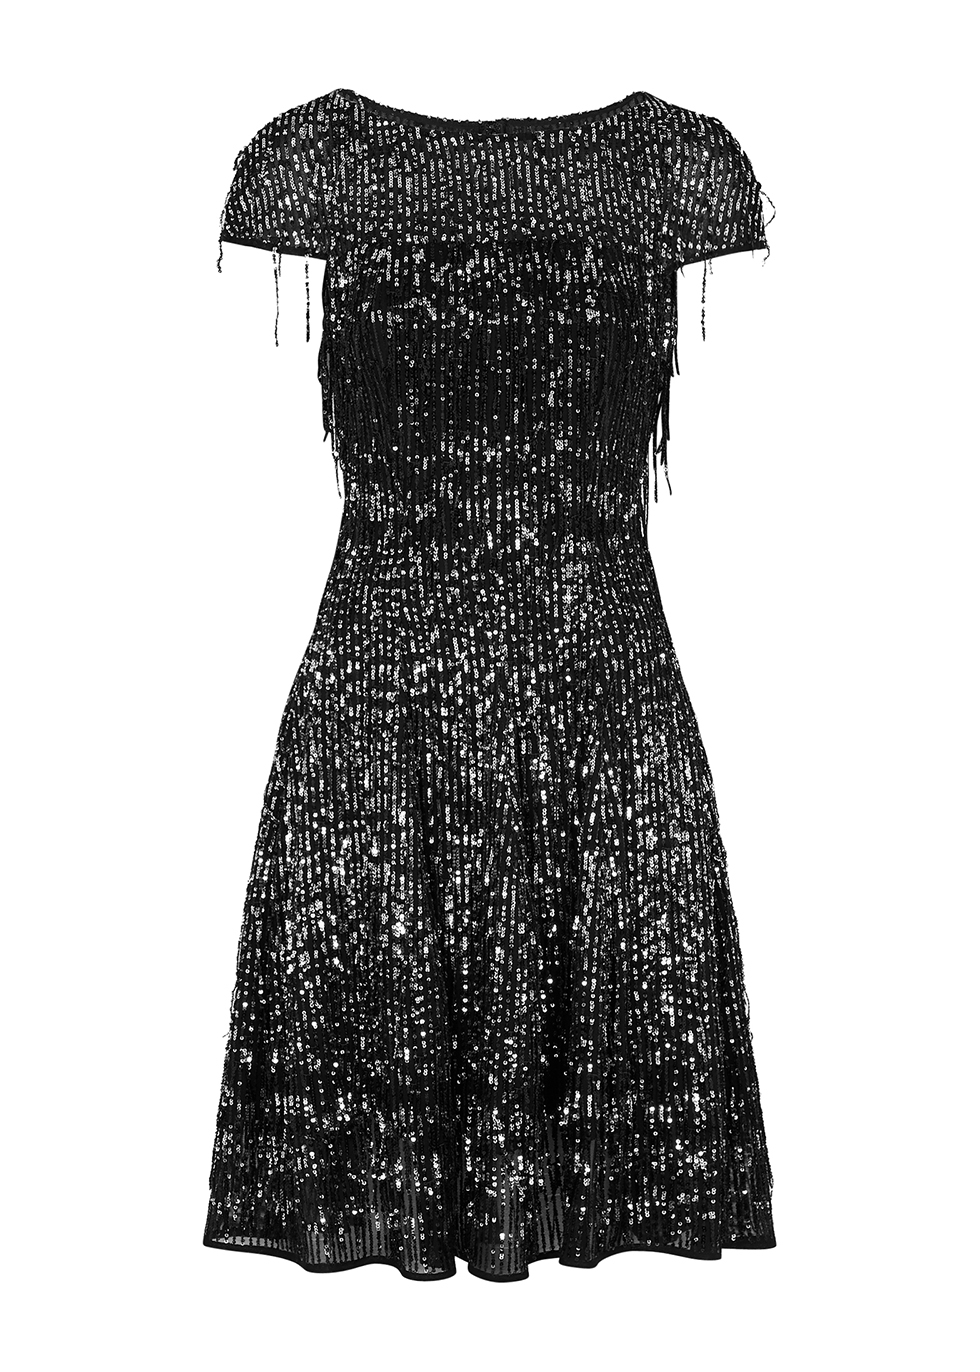 Sequin-embellished fringed dress